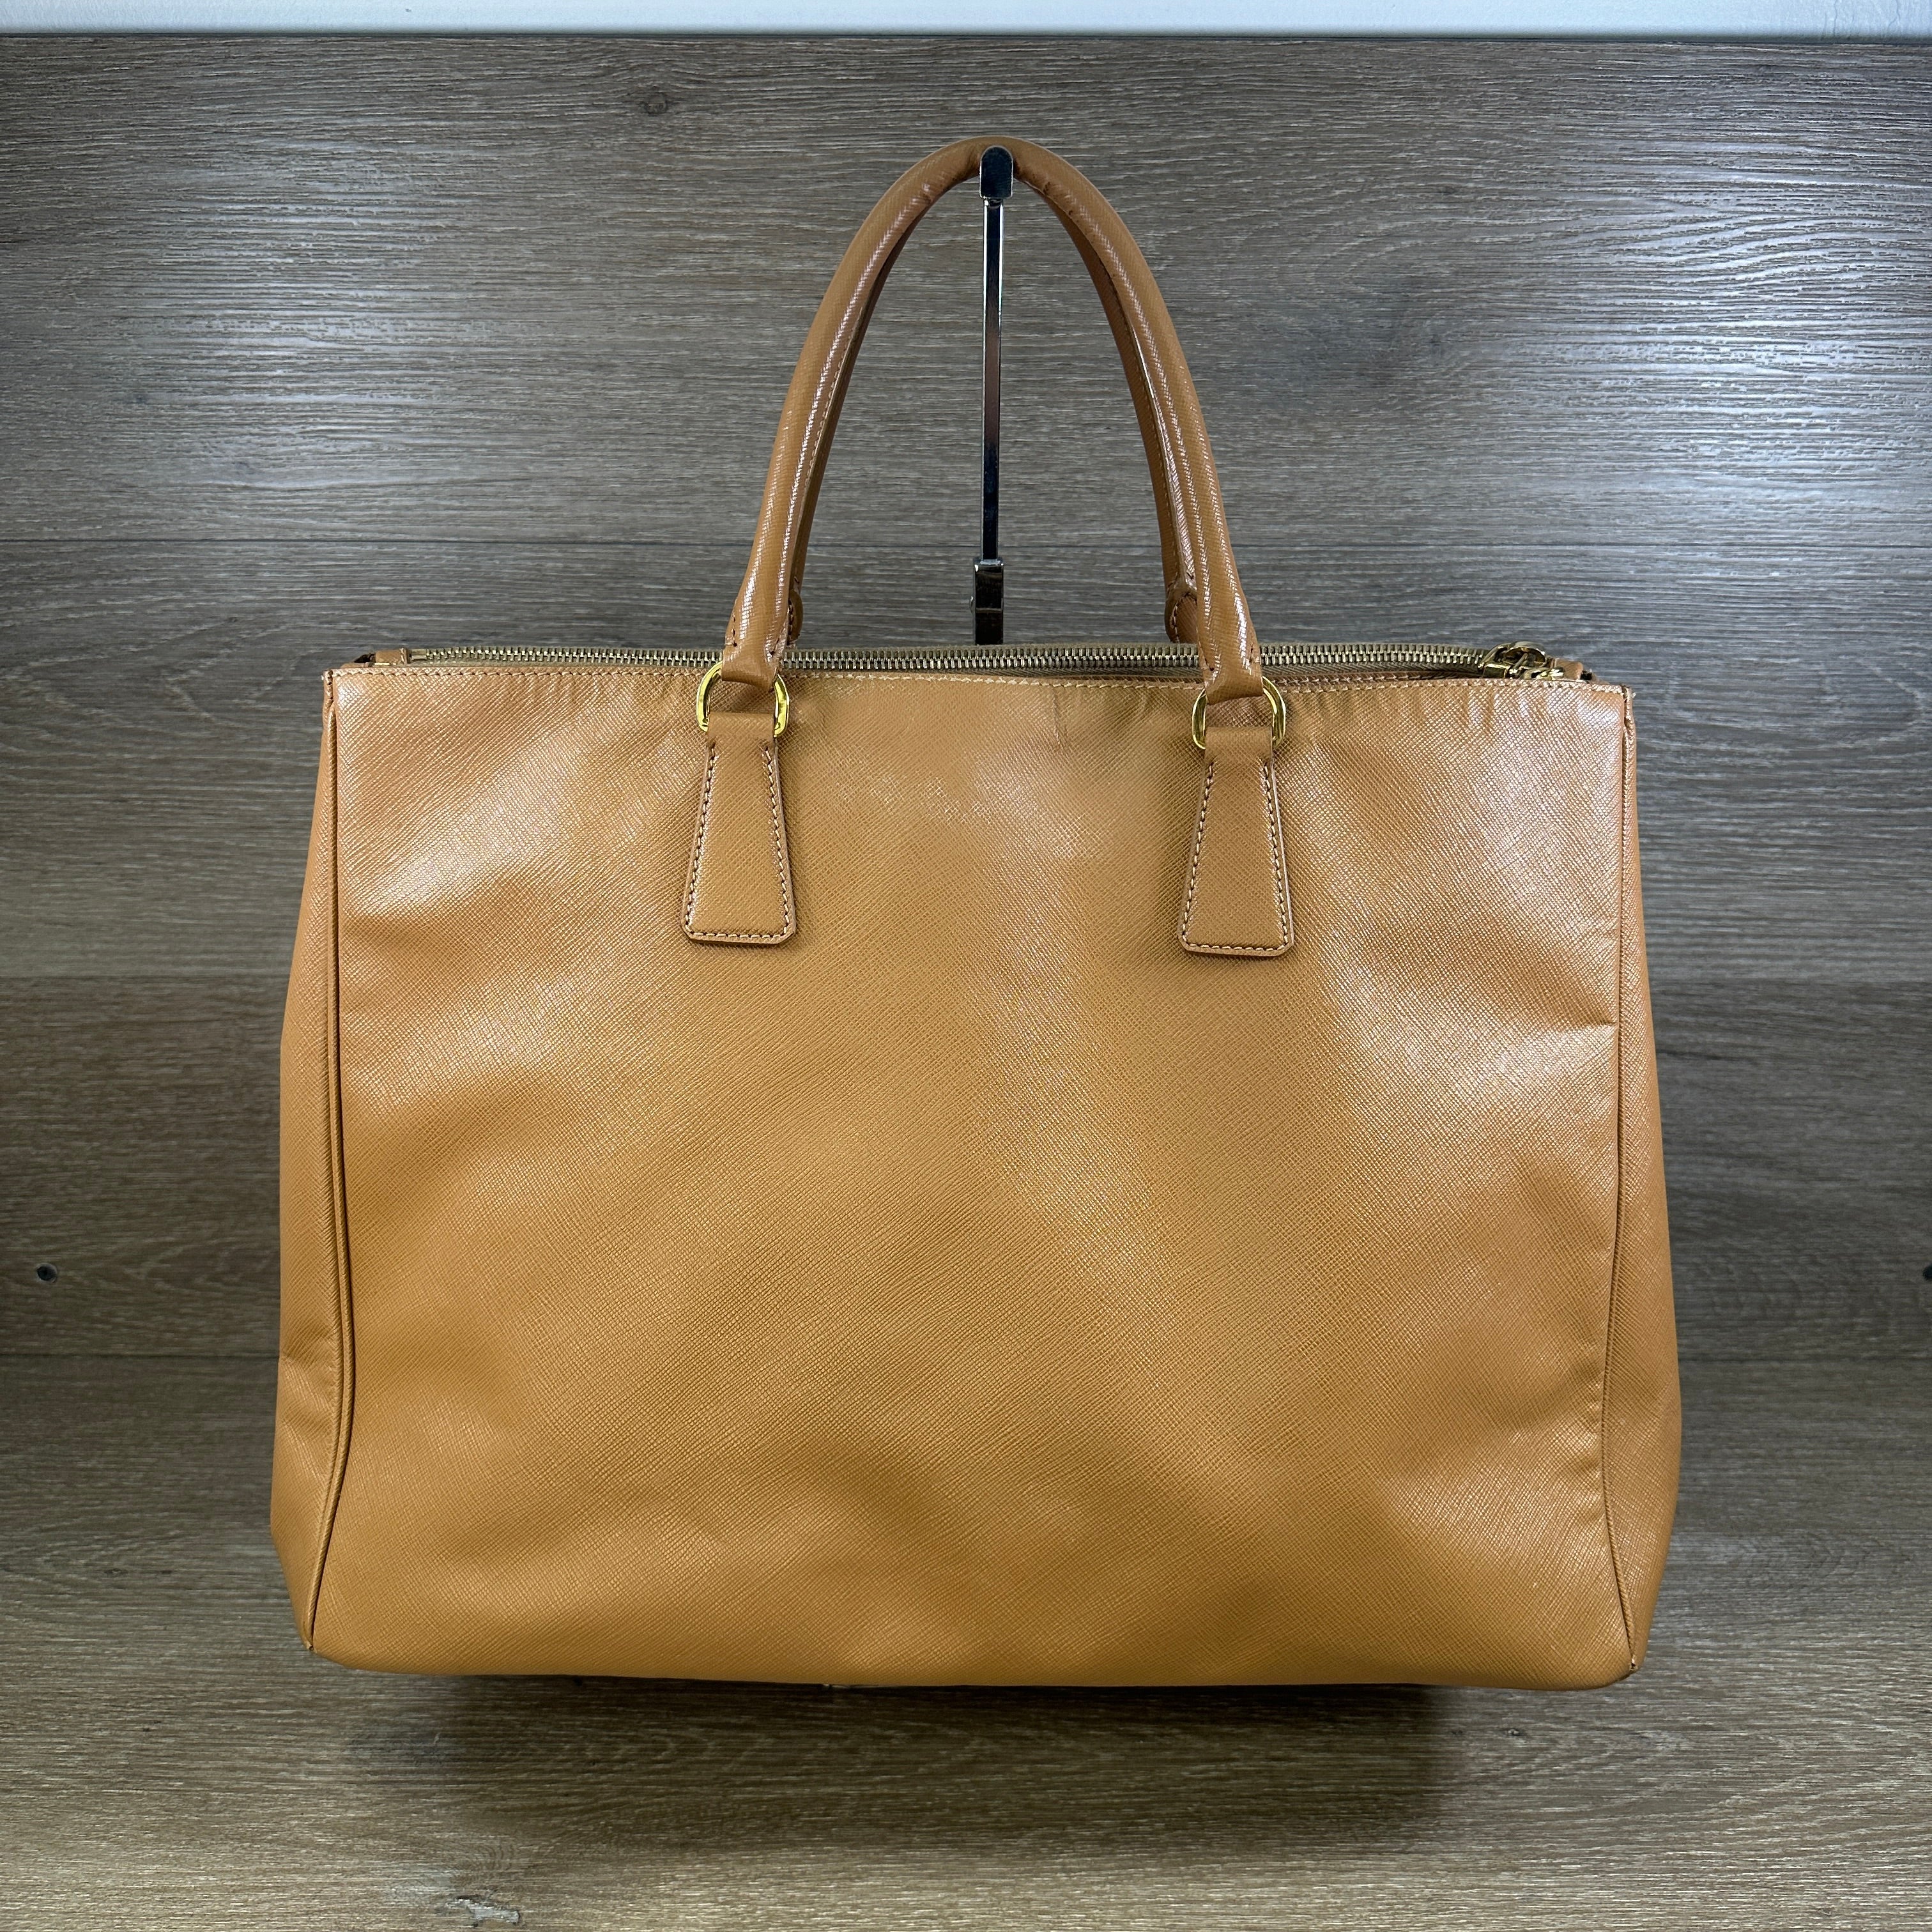 Prada Galleria Saffiano leather small tote crossbody bag in orange